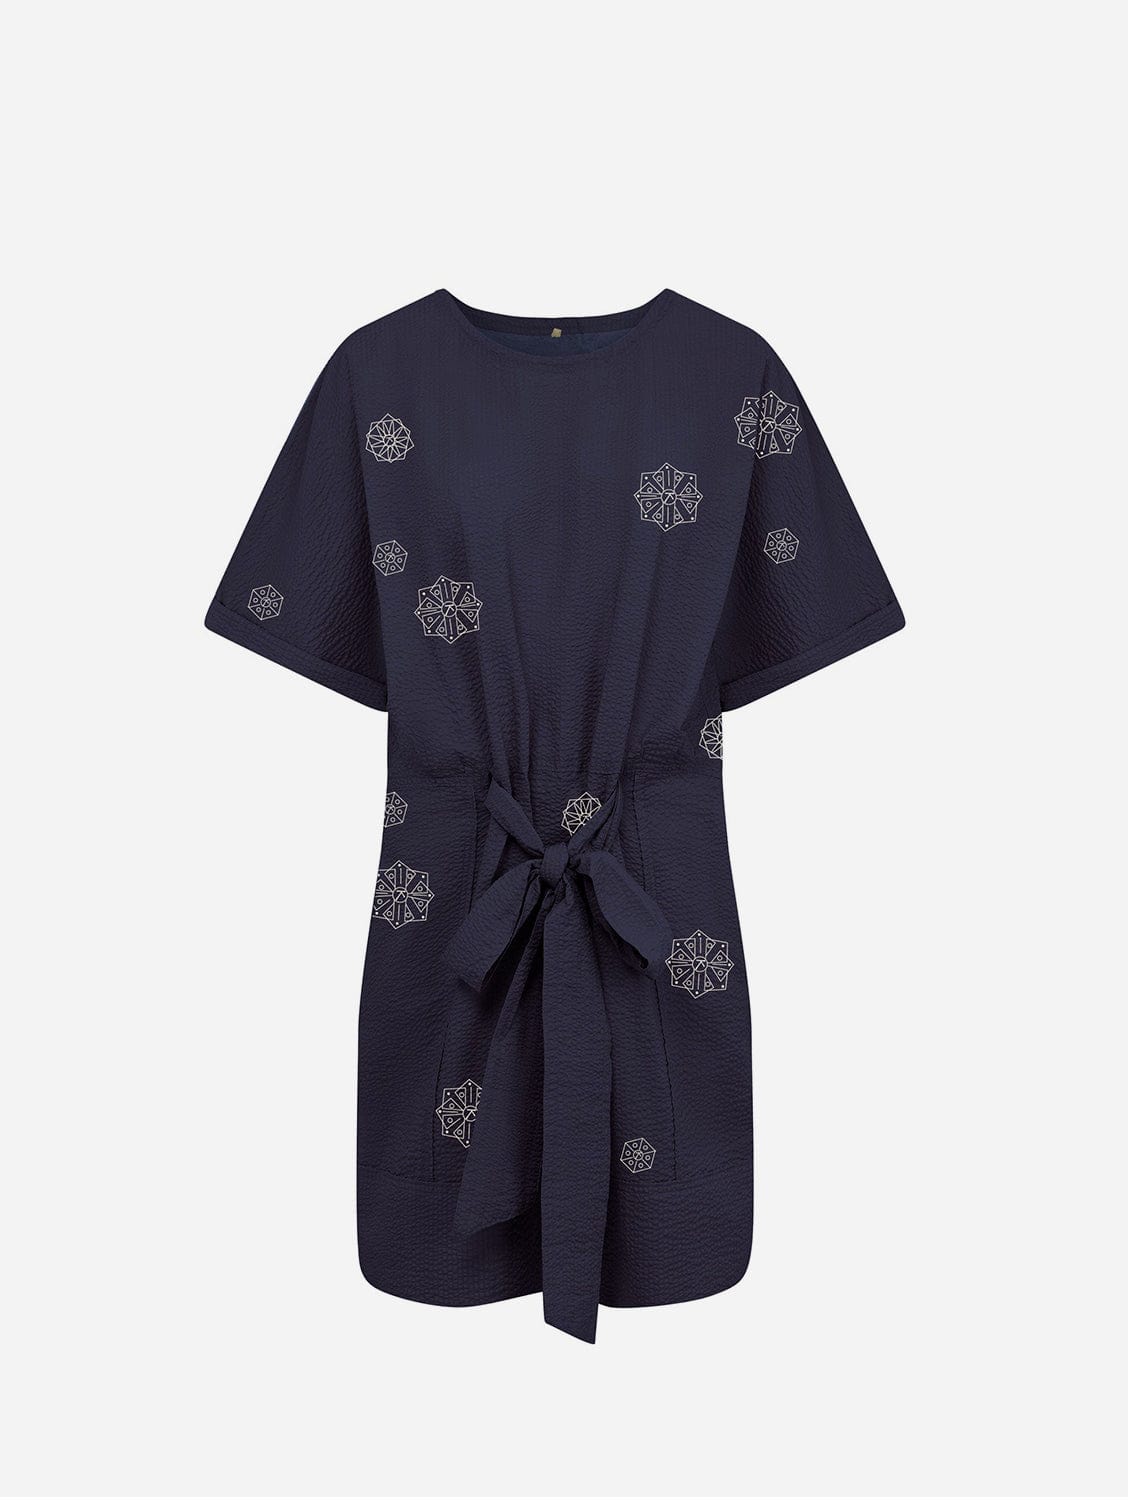 KOMODO AKINA - Embroidered Organic Cotton Dress Navy SIZE 1 / UK 8 / EUR 36